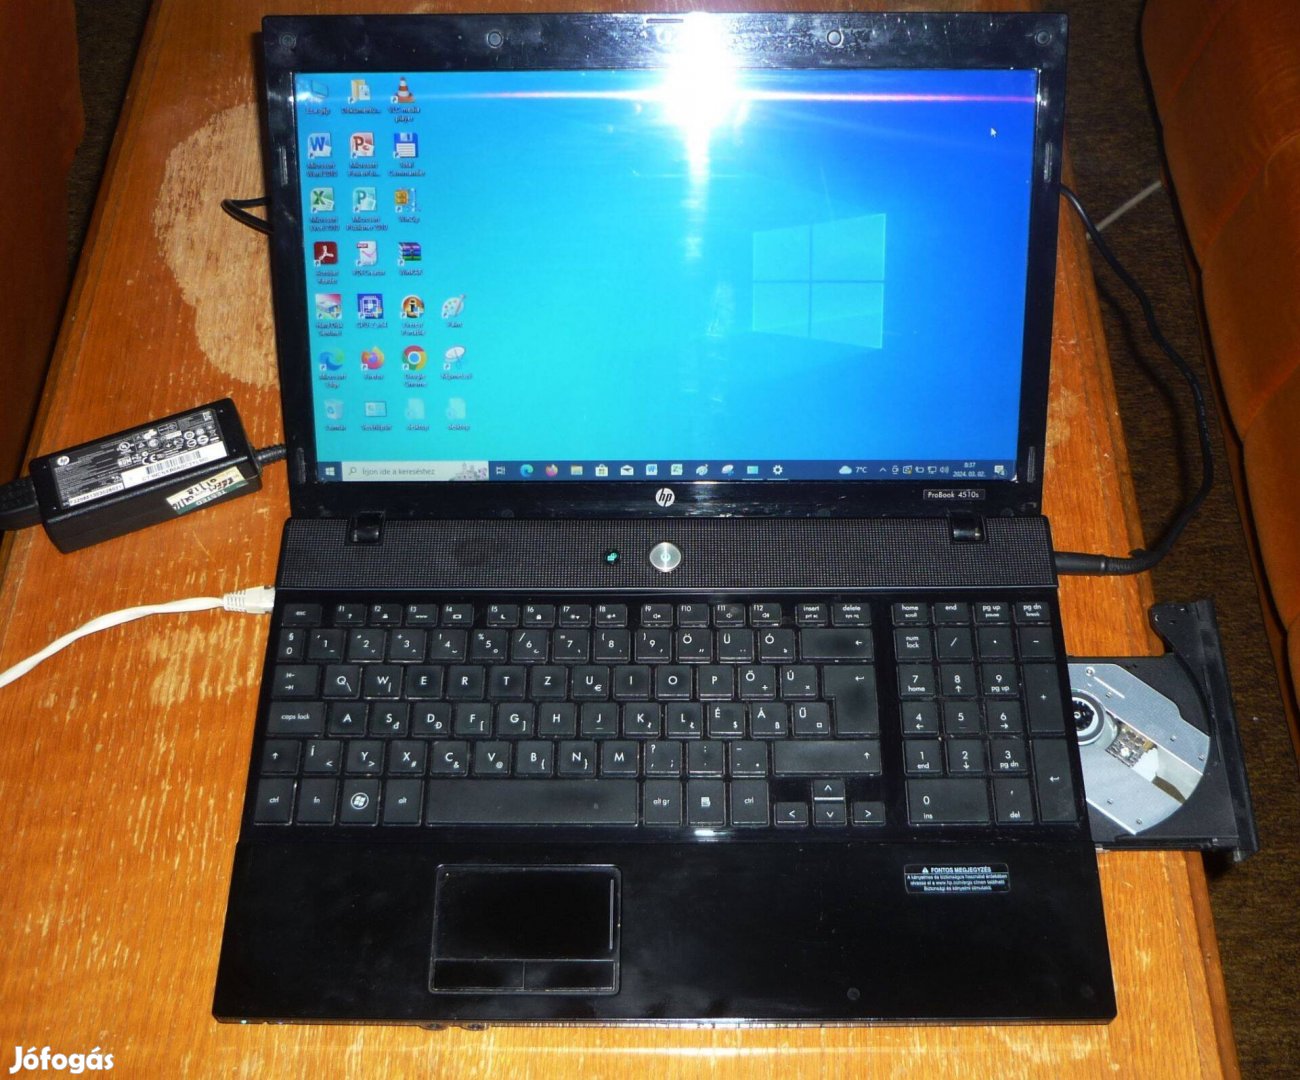 HP Probook 4510s (T5870-4GB-120GB) újszerű állapot, hibátlan működés